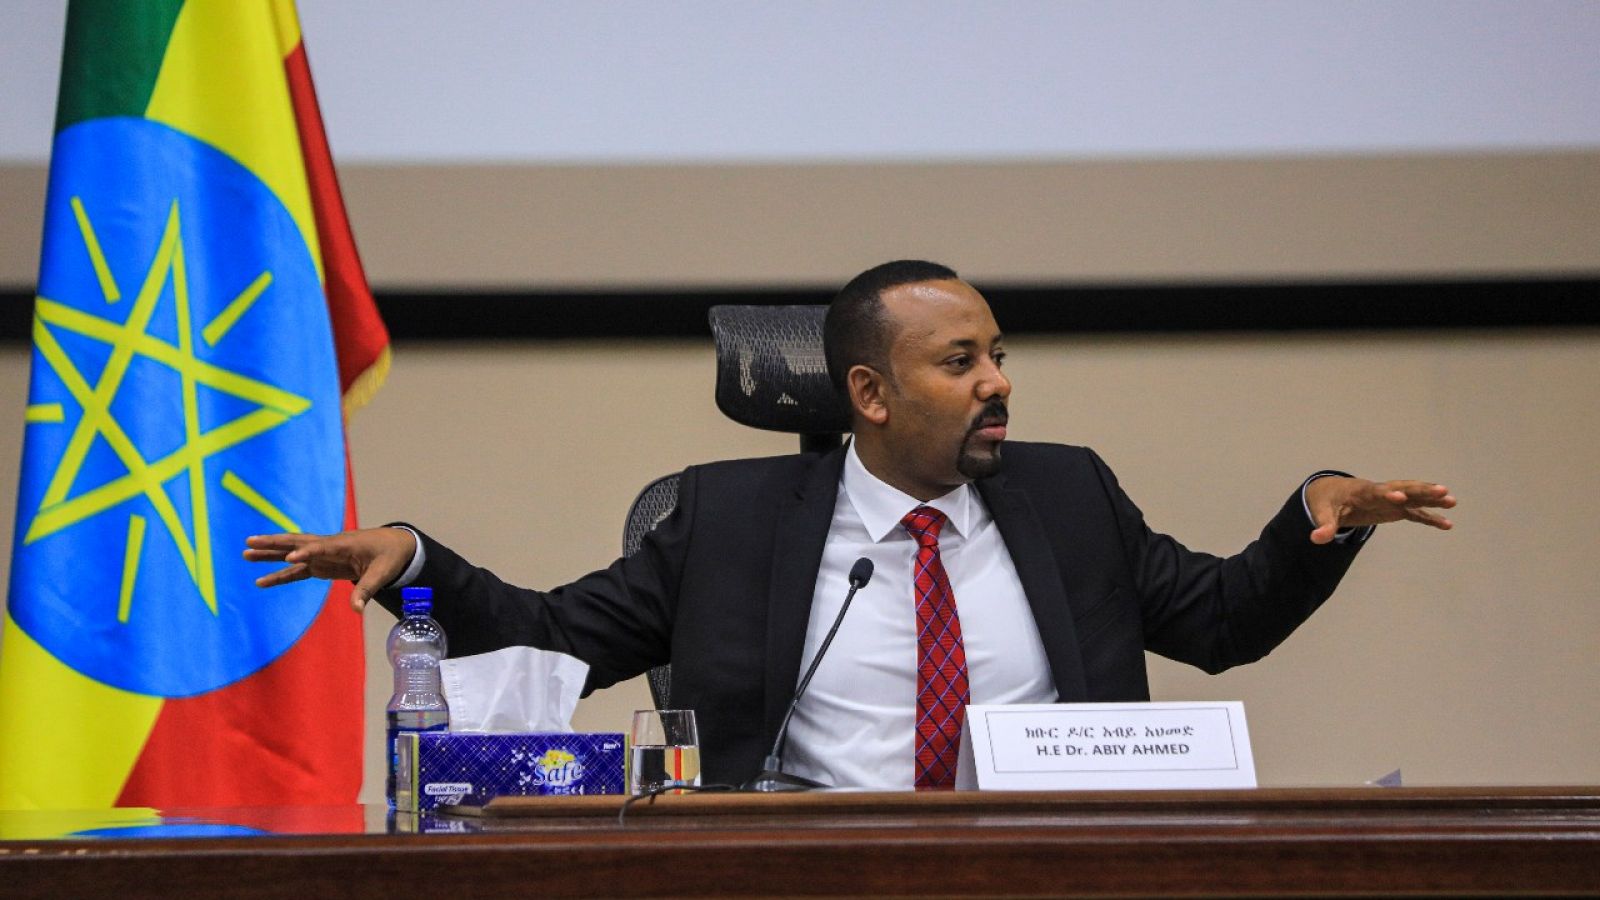 El primer ministro etíope, Abiy Ahmed, en una sesión de preguntas y respuestas en el parlamento.